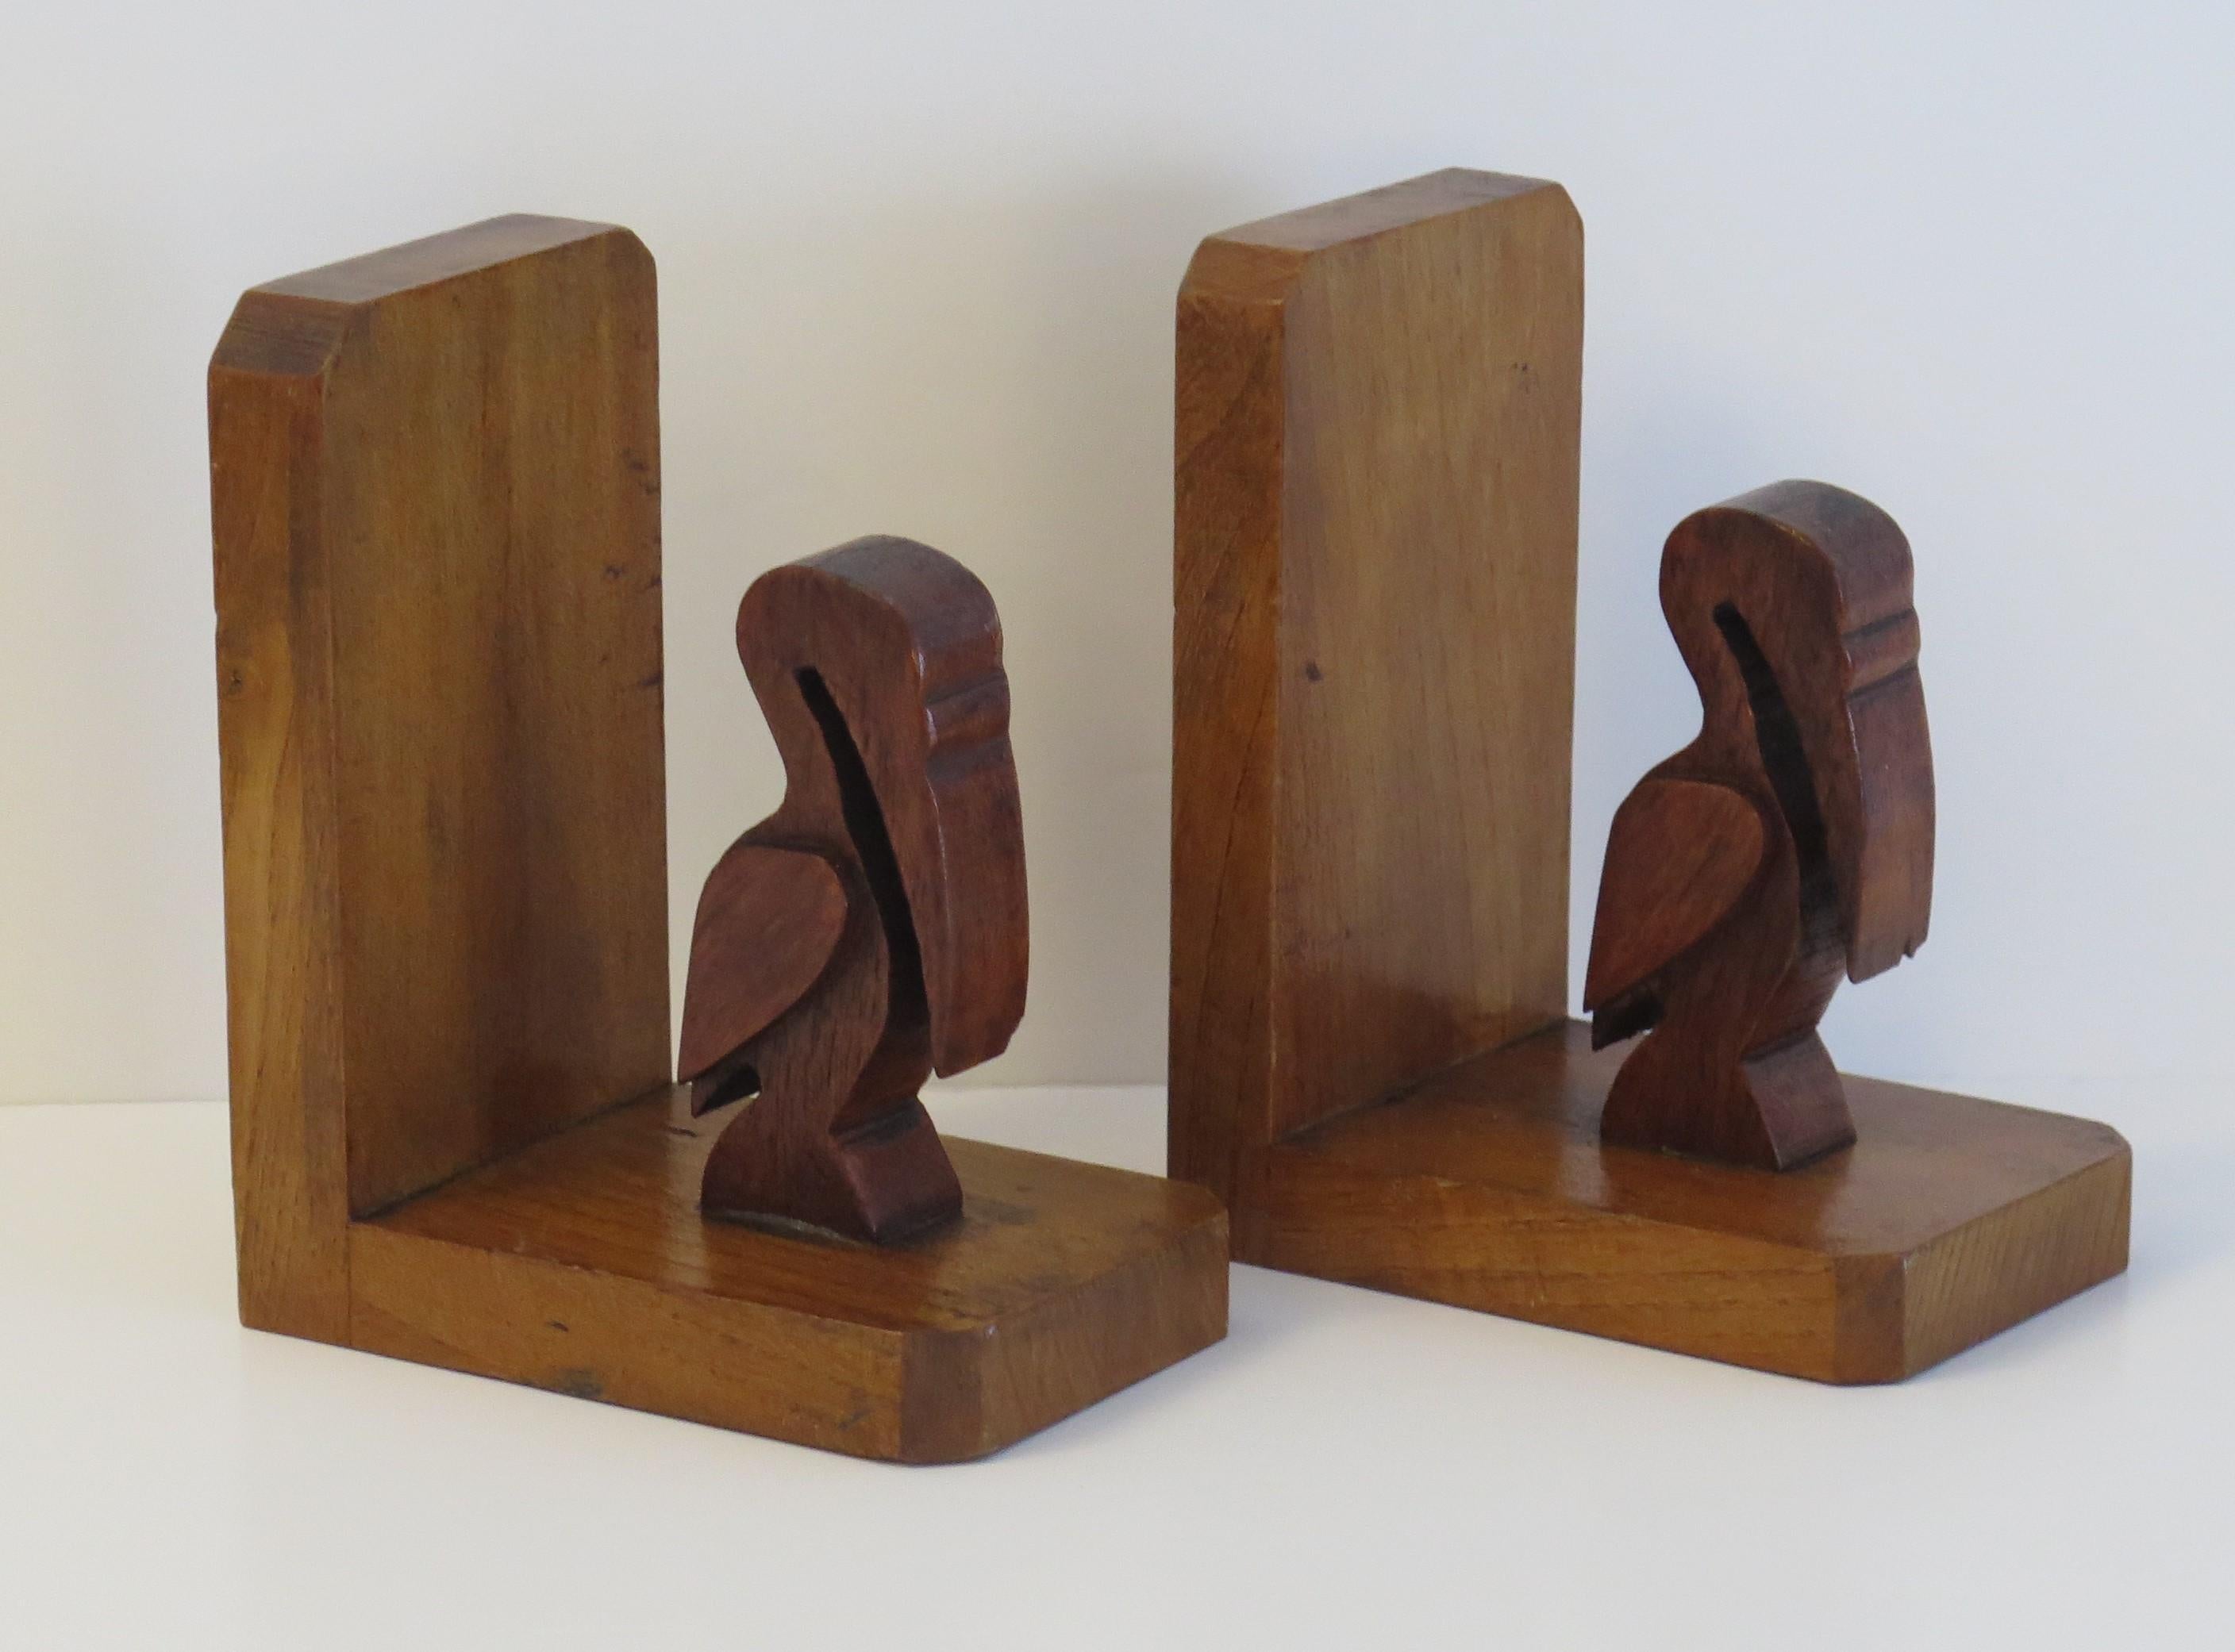 Il s'agit d'une bonne paire de livres d'époque Art Déco, représentant deux pélicans sculptés à la main dans du bois. 

Chaque pélican stylisé a été sculpté à la main dans un bois dur foncé et repose sur un cadre de base en bois clair contrastant,